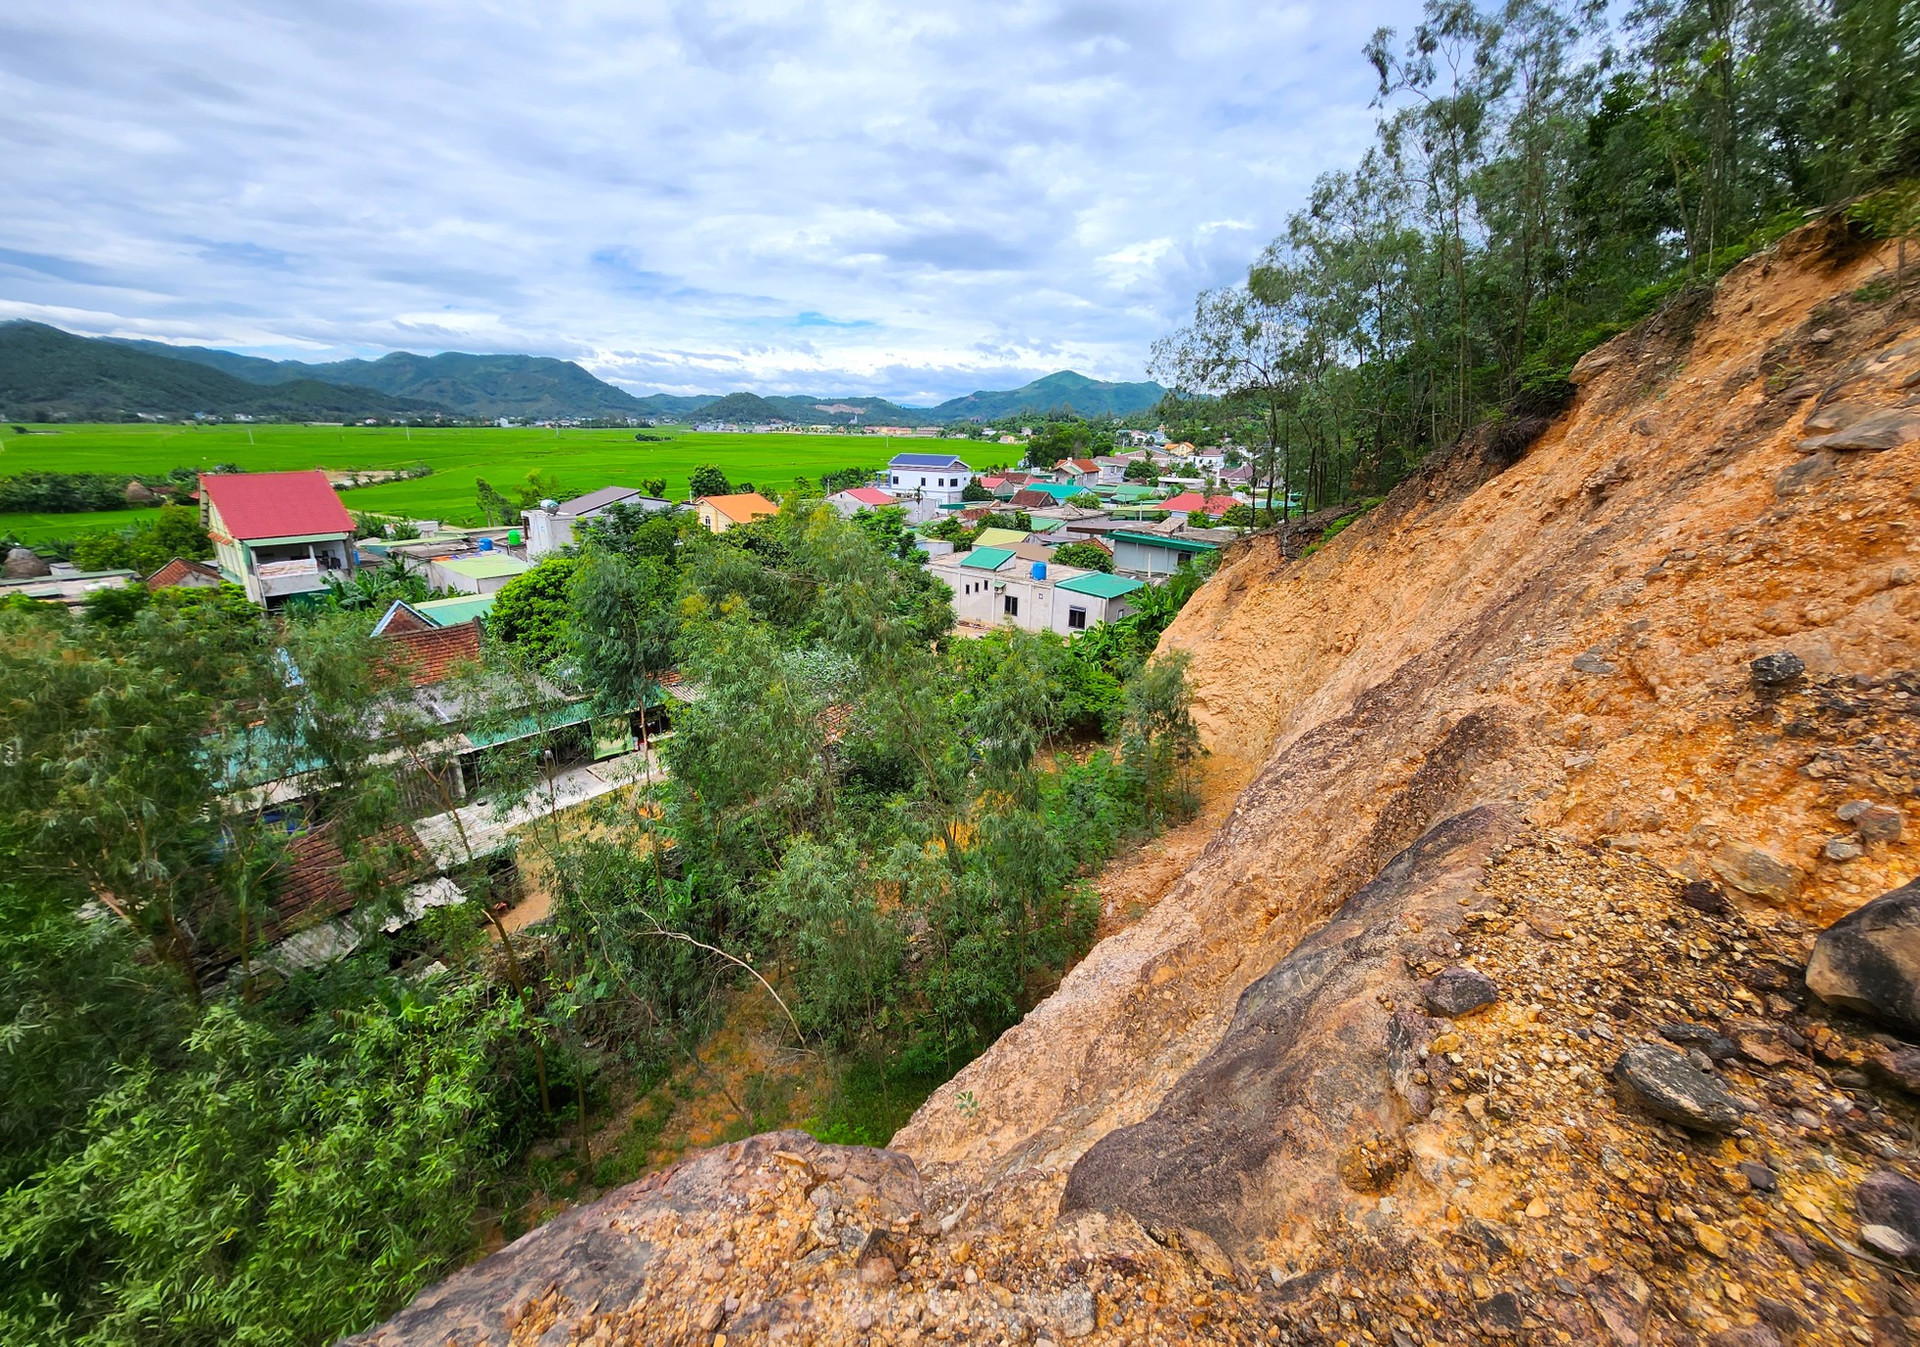 Núi nứt đe dọa sập ở Nghệ An, hàng trăm hộ dân sống trong sợ hãi ảnh 14